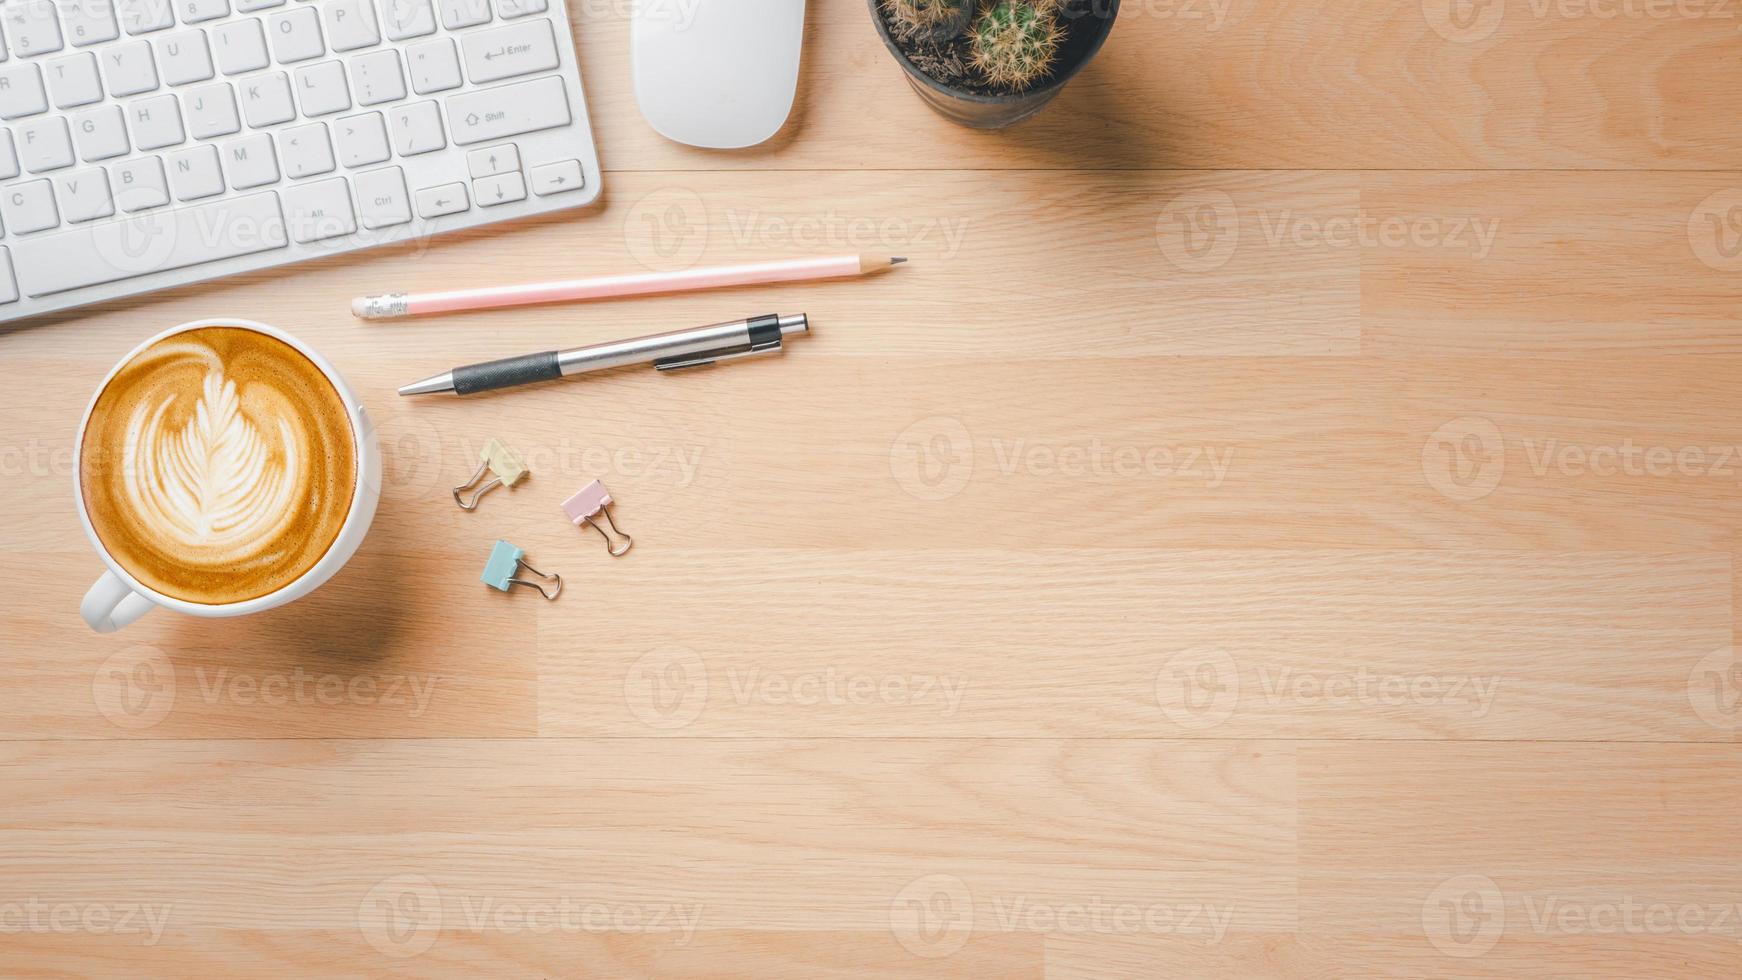 espace de travail de bureau avec ordinateur à clavier, souris, stylo, crayon et tasse de café, vue de dessus à plat avec espace de copie. photo